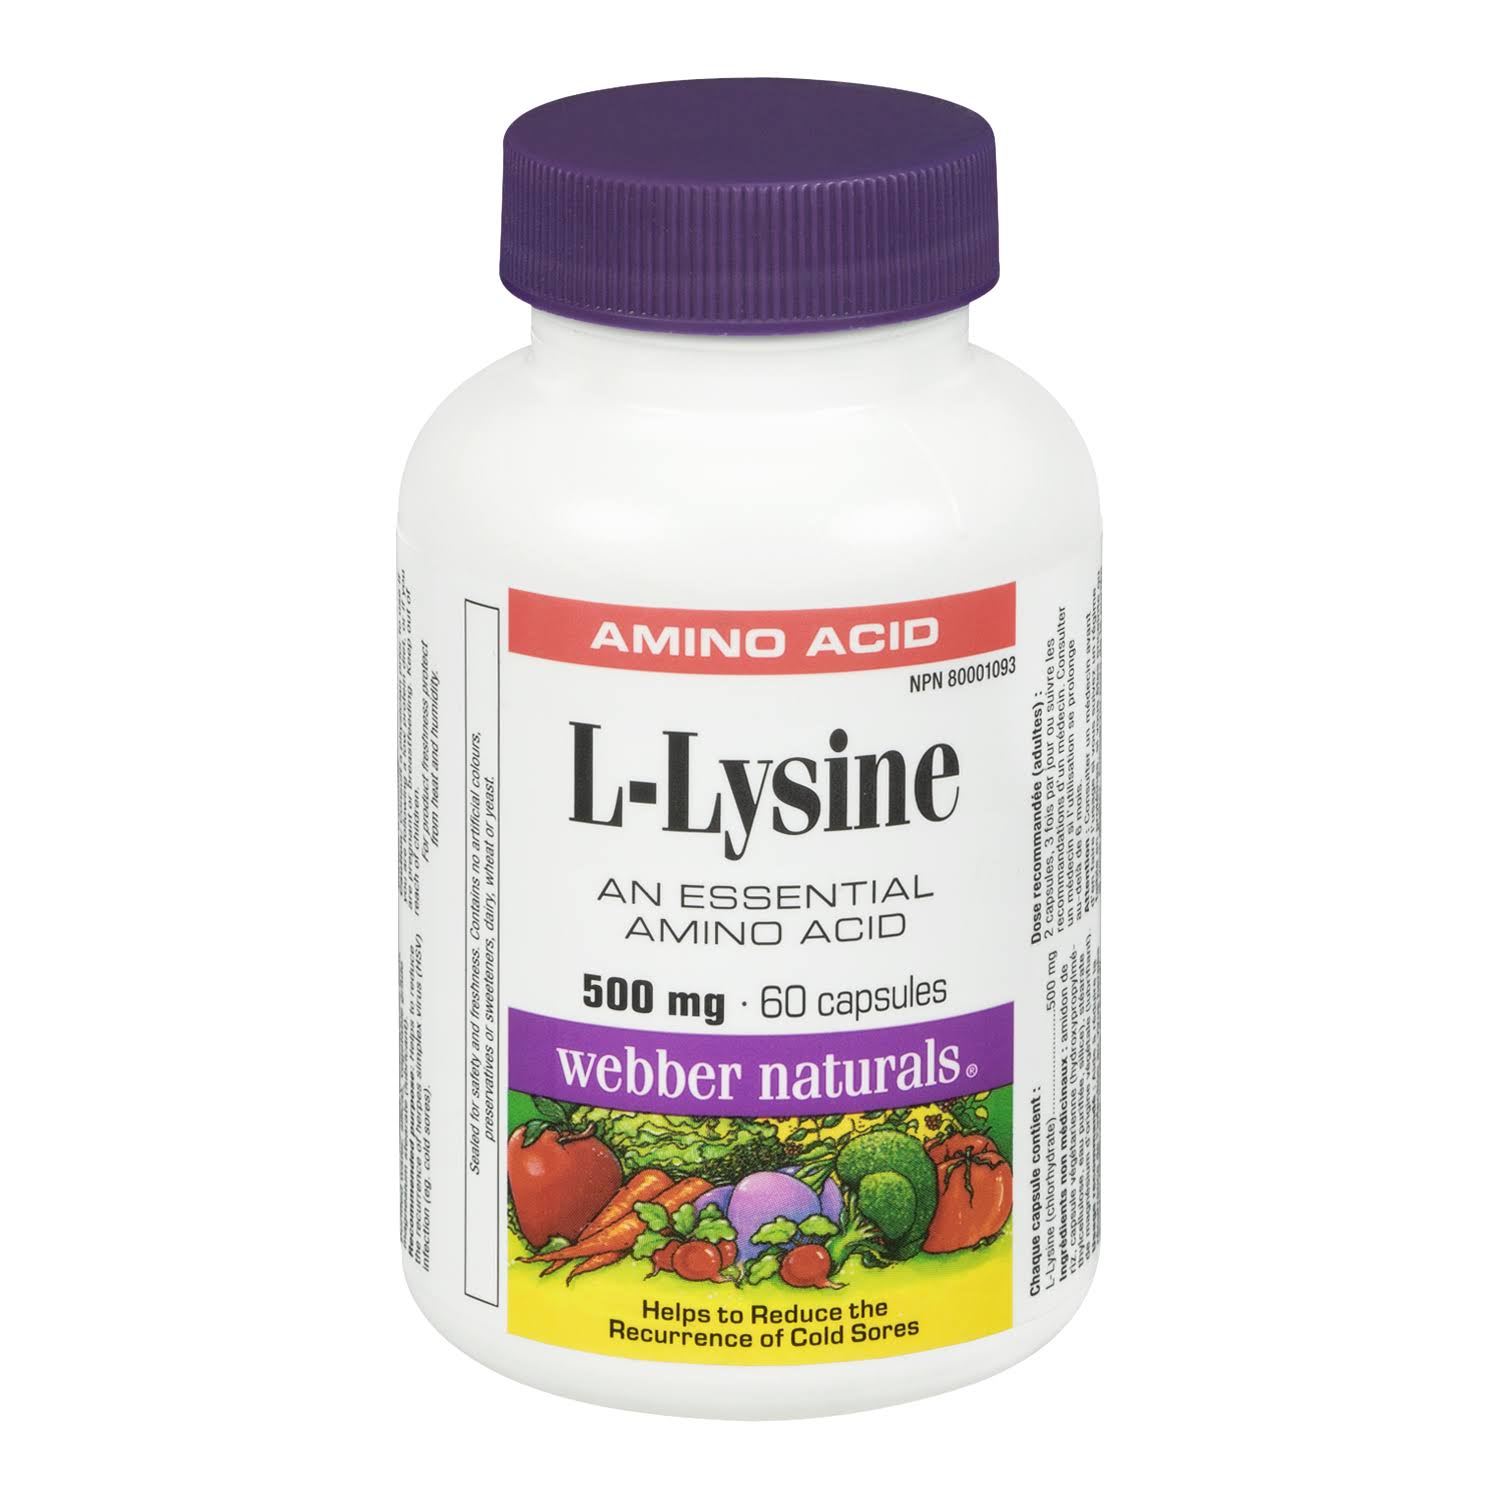 Webber Naturals L Lysine Supplement - 500mg, 60ct